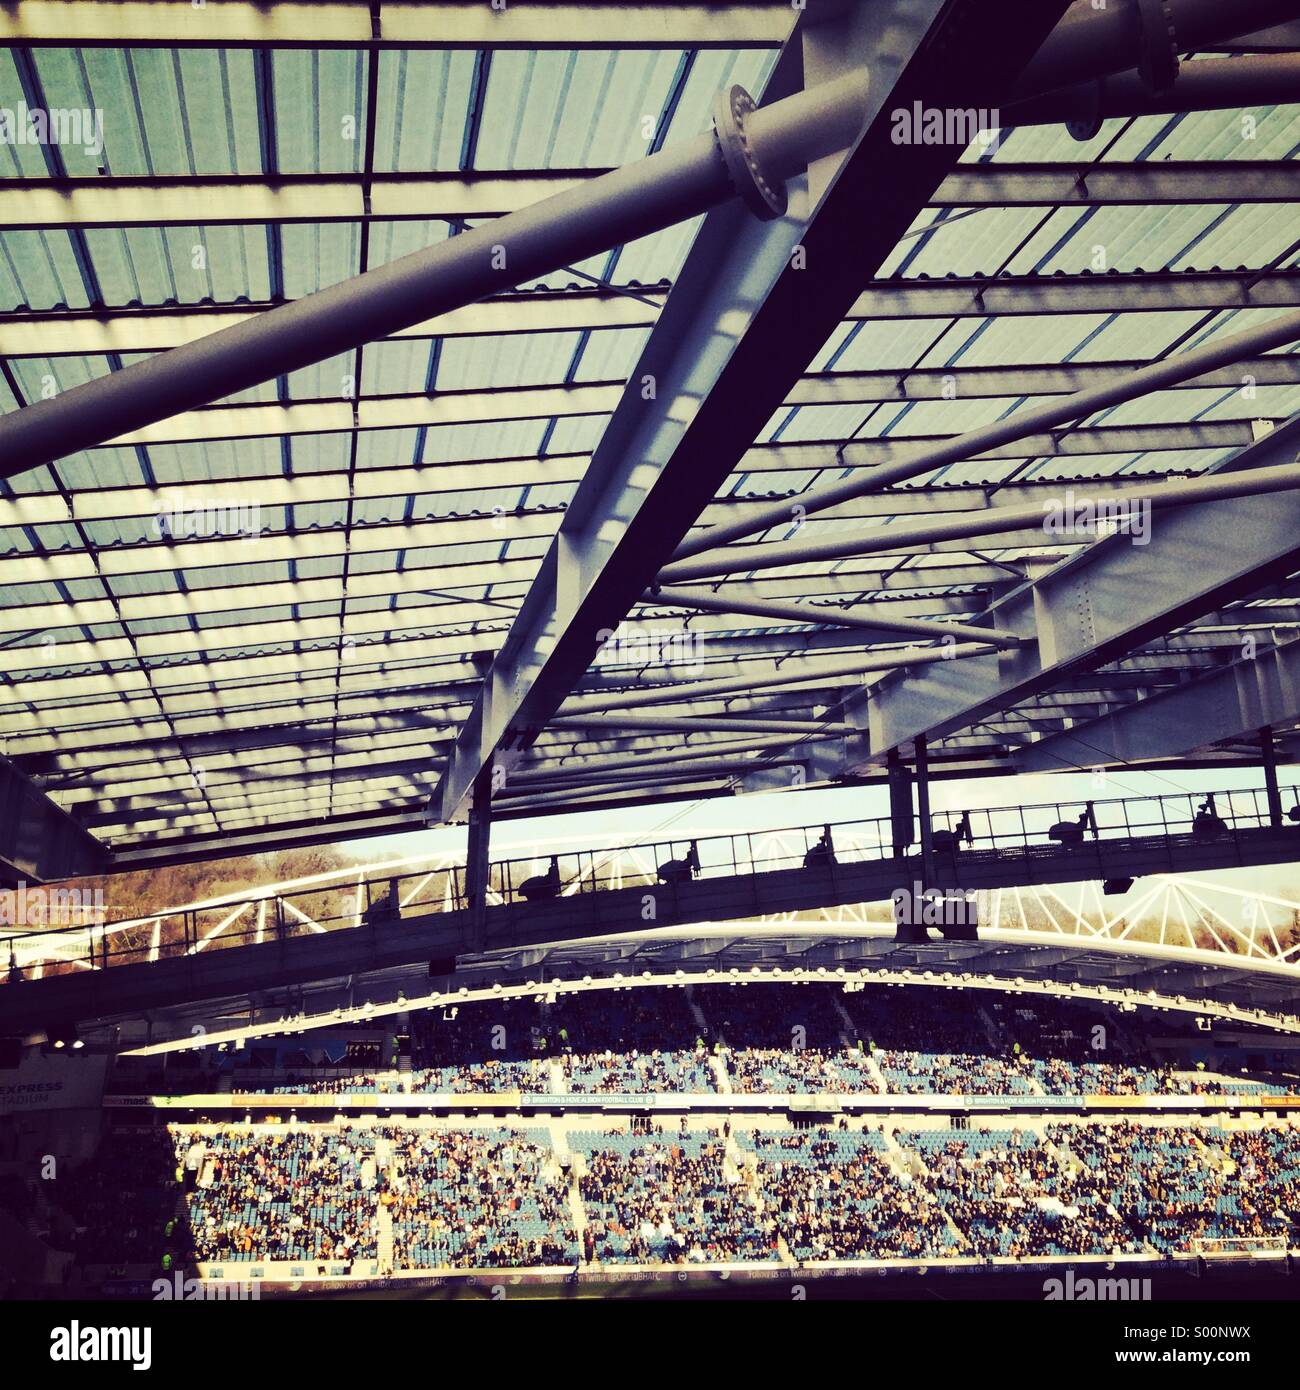 Amex stadium roof perspective Stock Photo